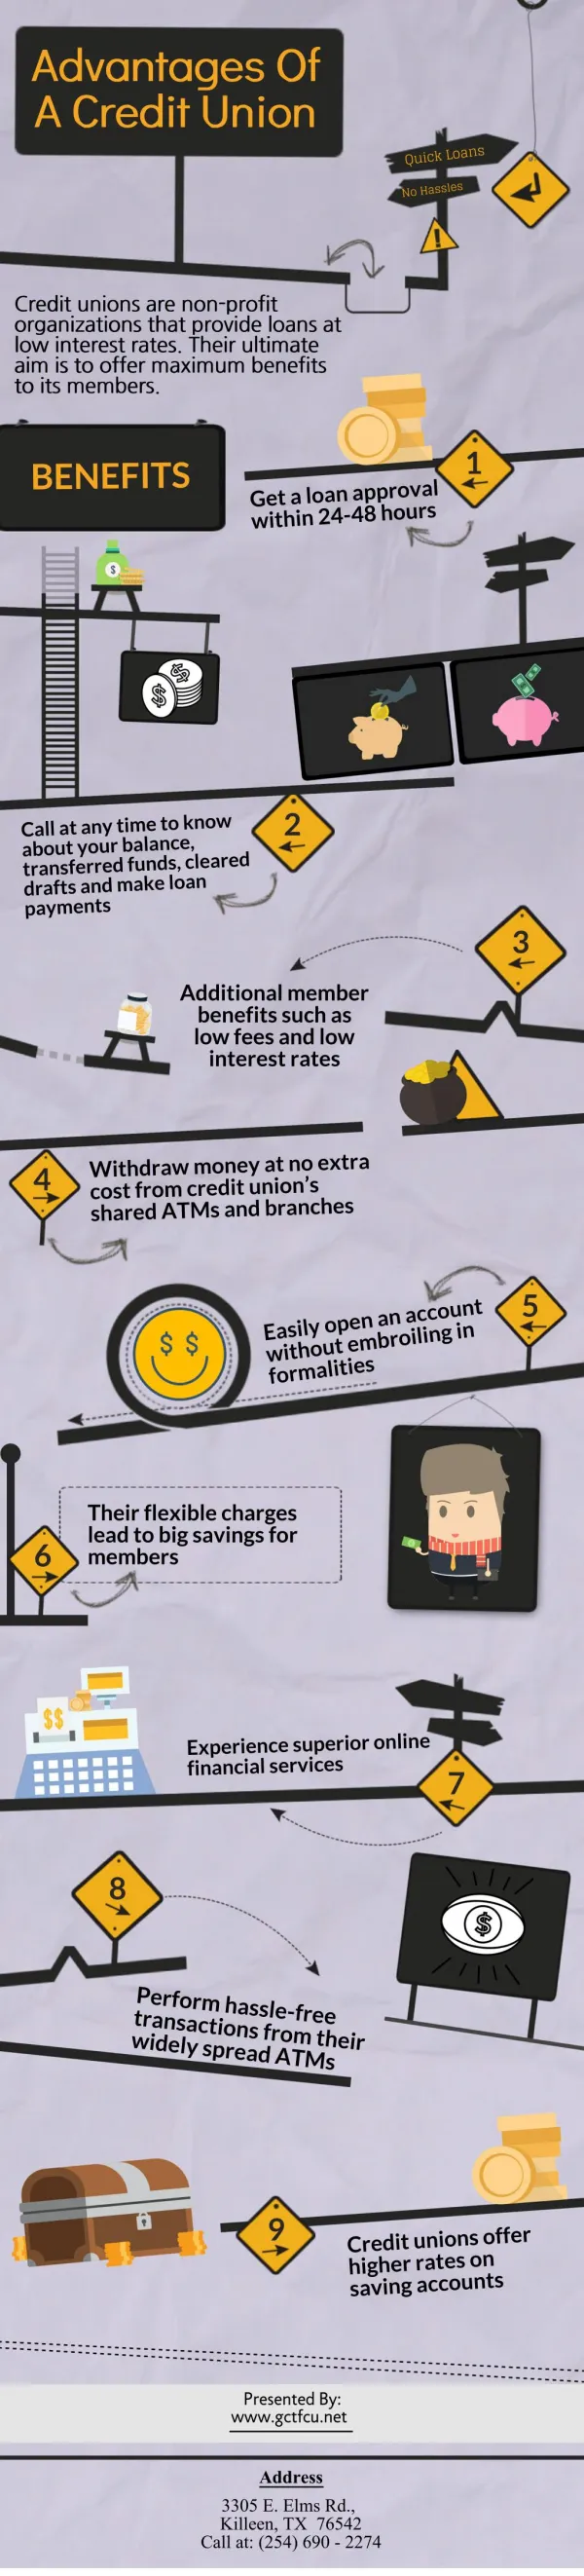 Advantages Of A Credit Union